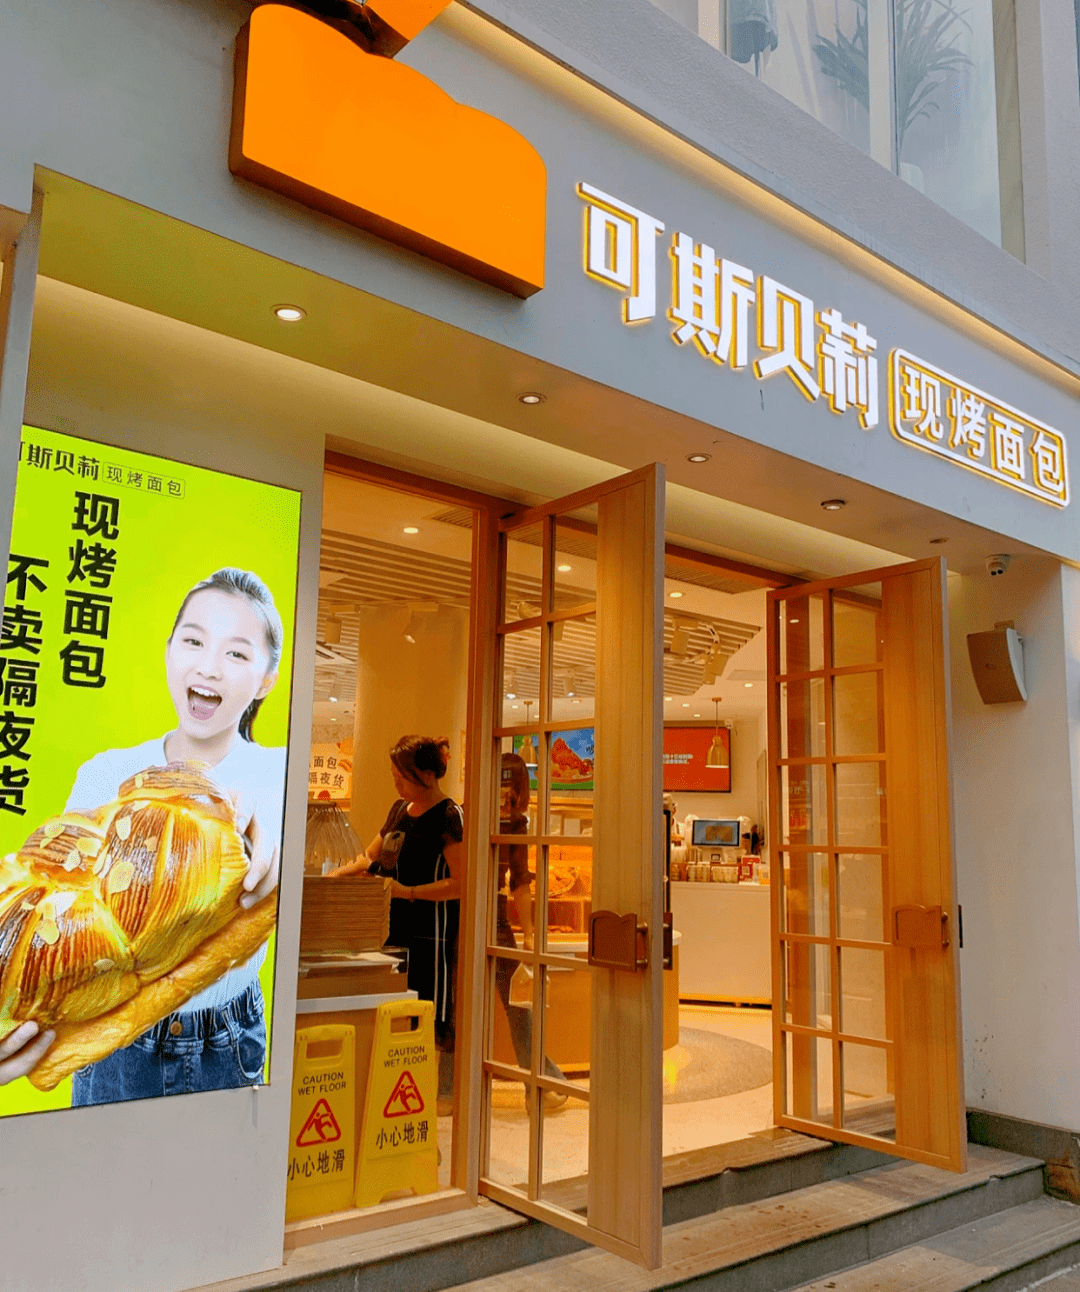 可斯贝莉创立于2019年,据媒体报道,是福建本土快餐品牌华莱士创始人华